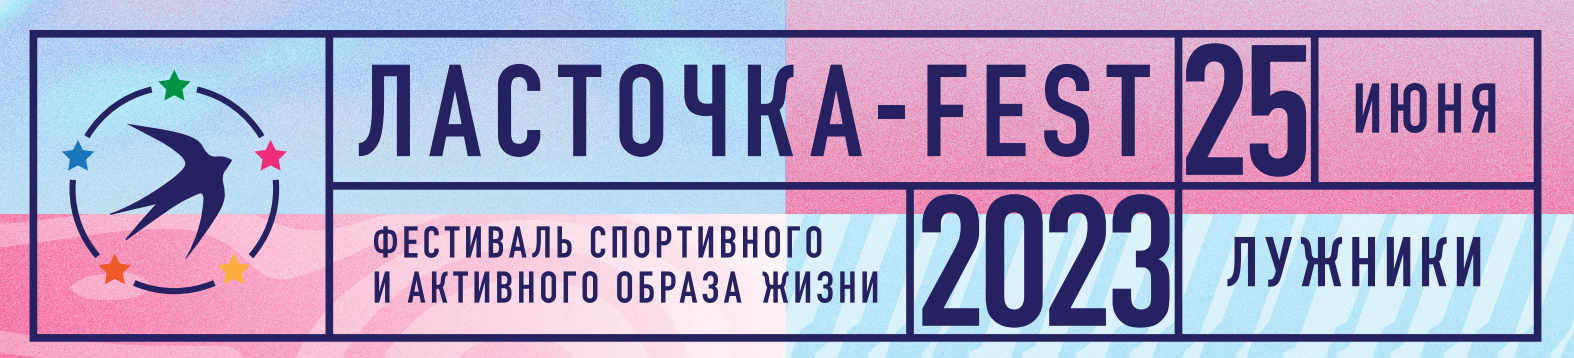 Спортивно музыкальный фестиваль «Ласточка-Fest»